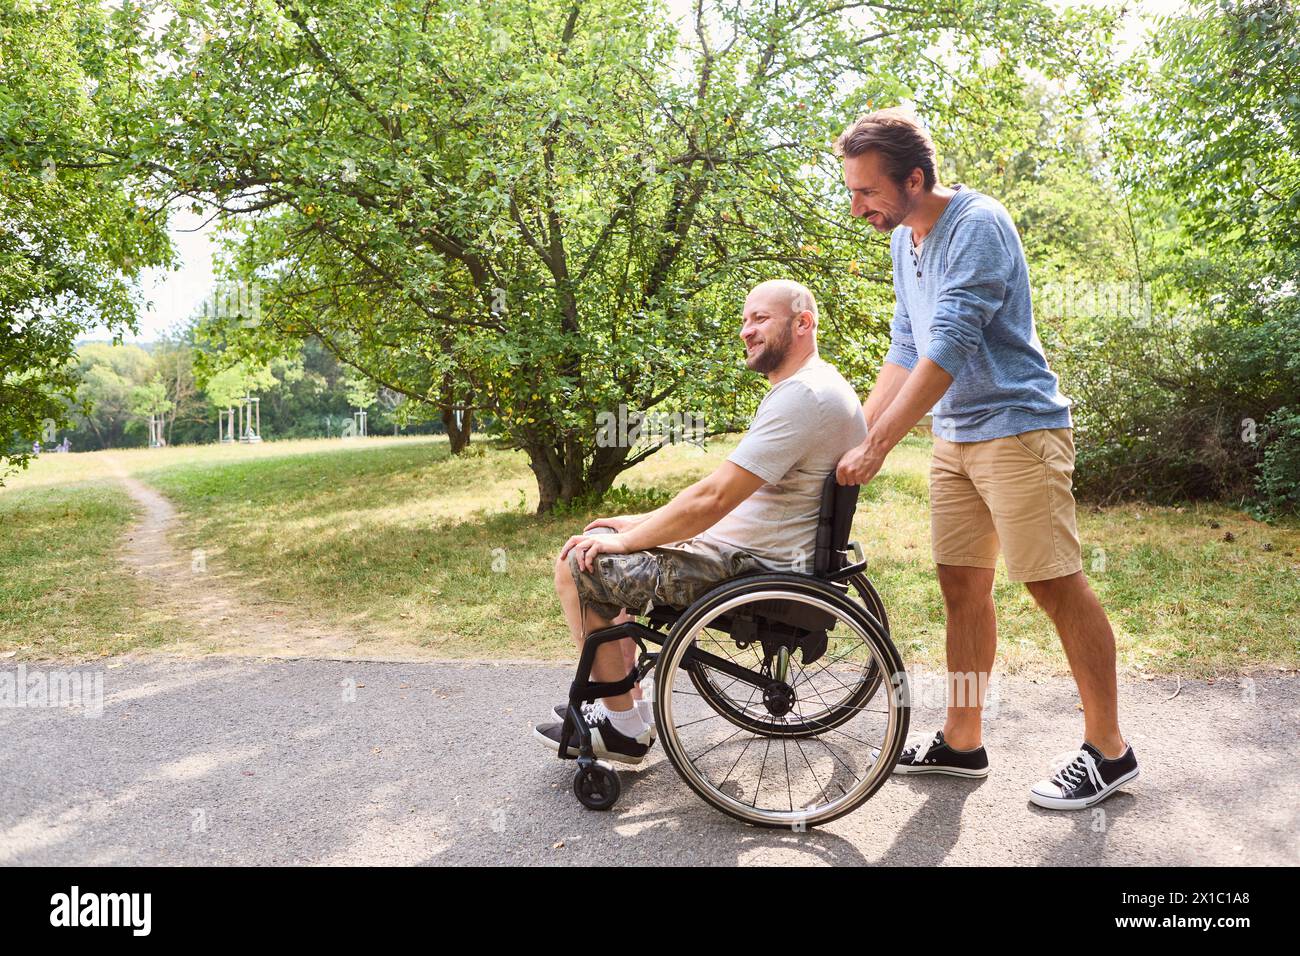 Ein Mann, der einen Rollstuhl benutzt und draußen einen freudigen Moment mit seinem Freund teilt. Sie befinden sich in einem grünen Park und betonen Freundschaft und Inklusion. Stockfoto